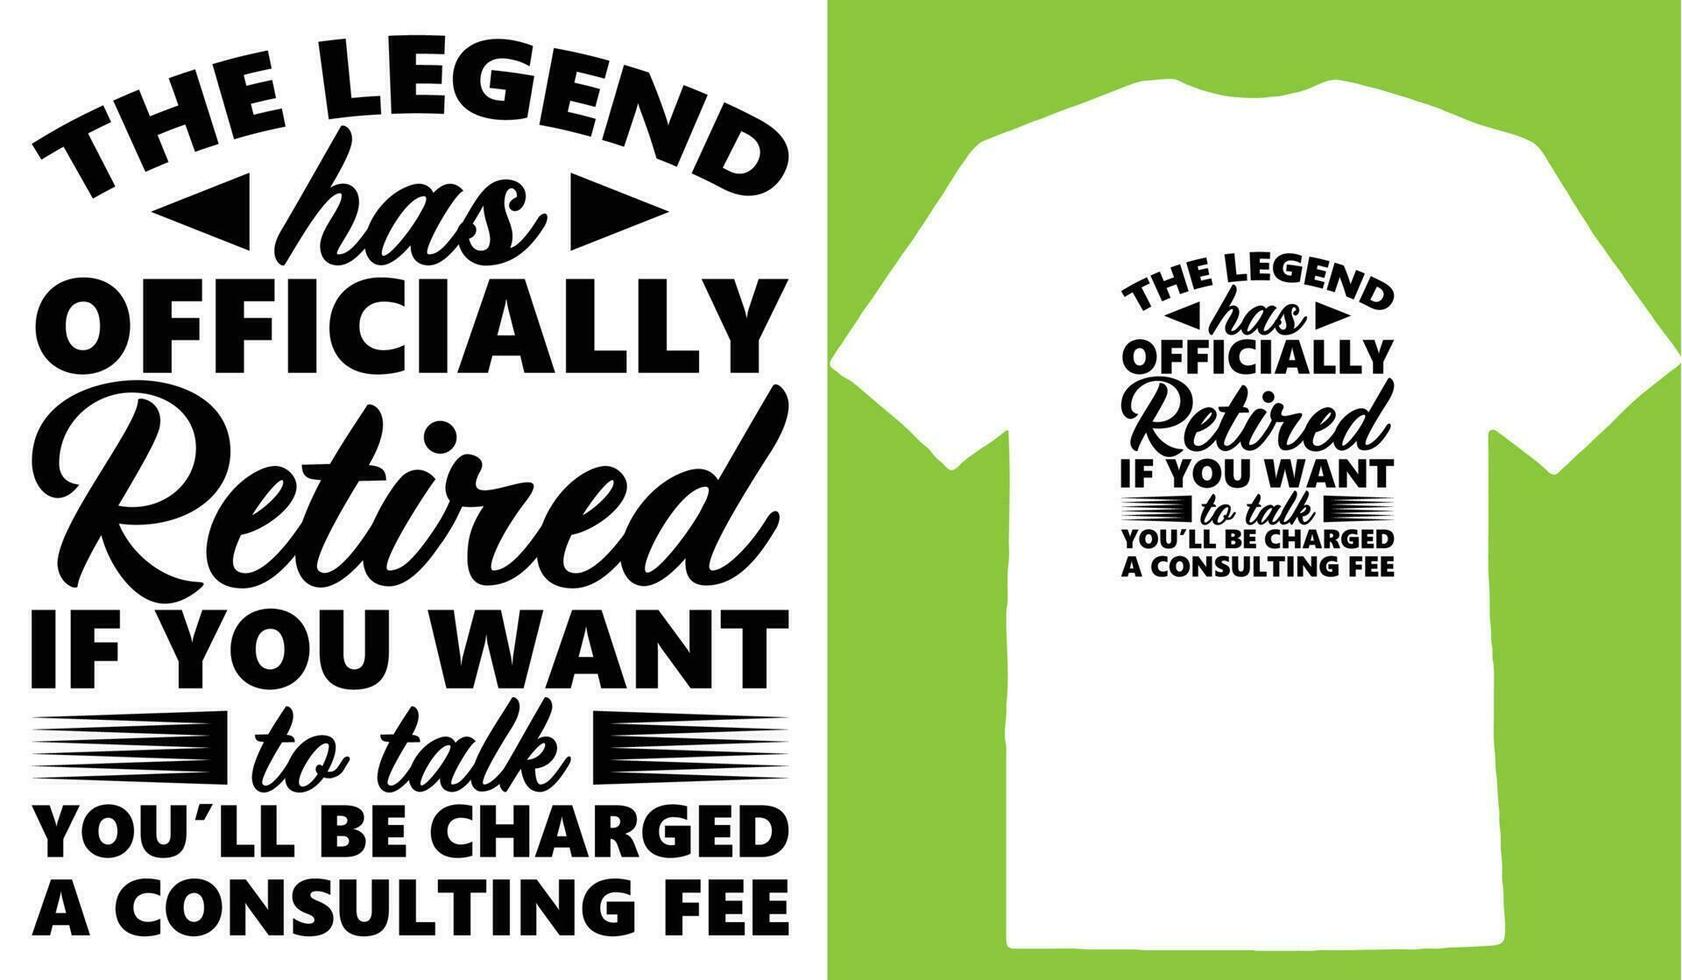 il leggenda ha ufficialmente pensionato Se voi volere per parlare tu essere carico un' consulenza tassa maglietta vettore